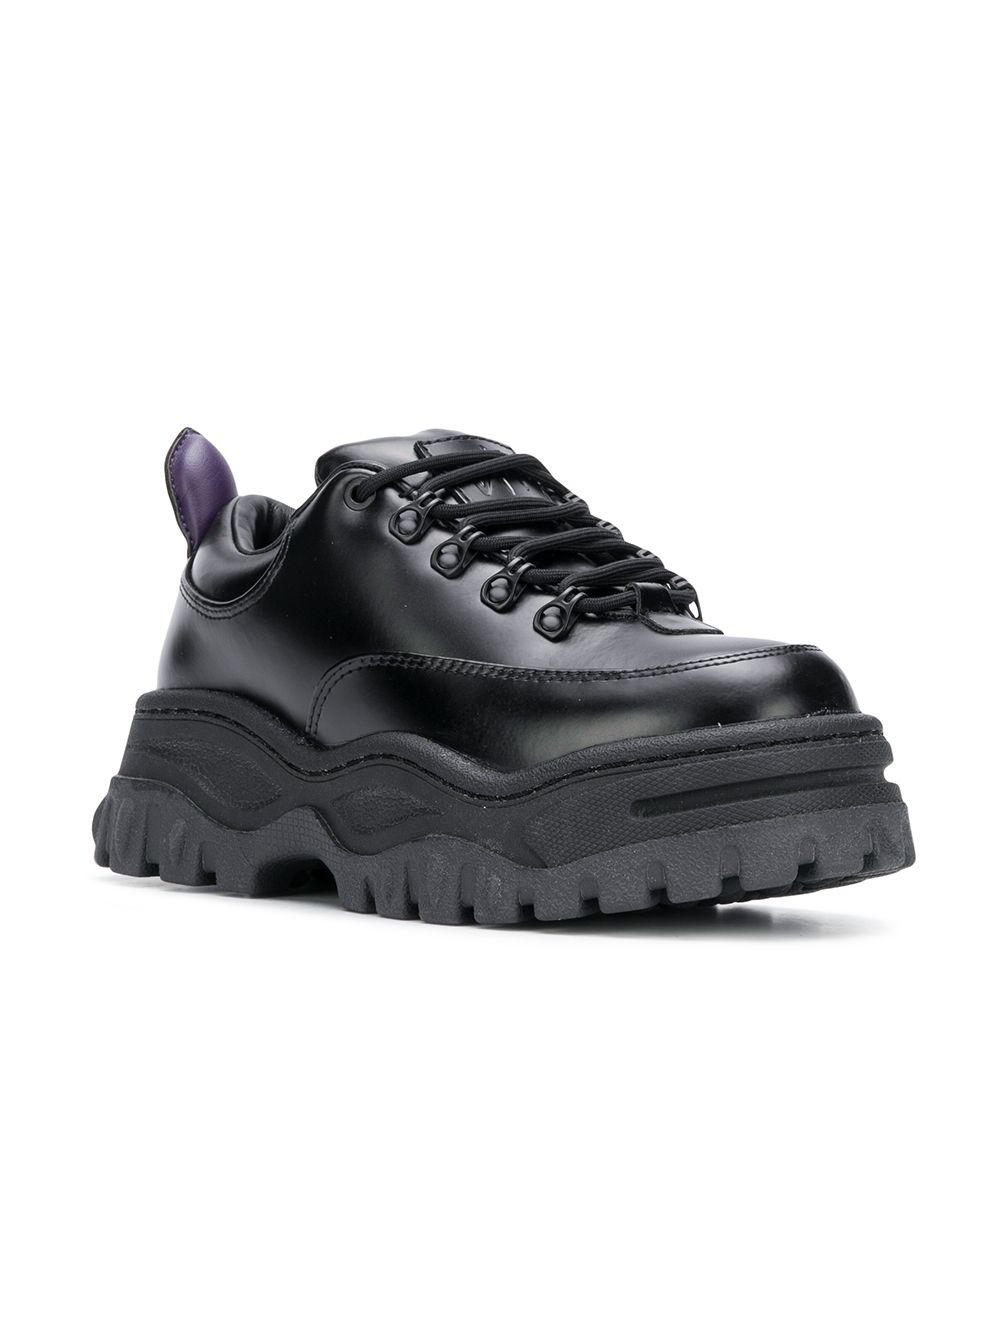 Eytys Angel Platform Leather Sneakers in Black - Lyst